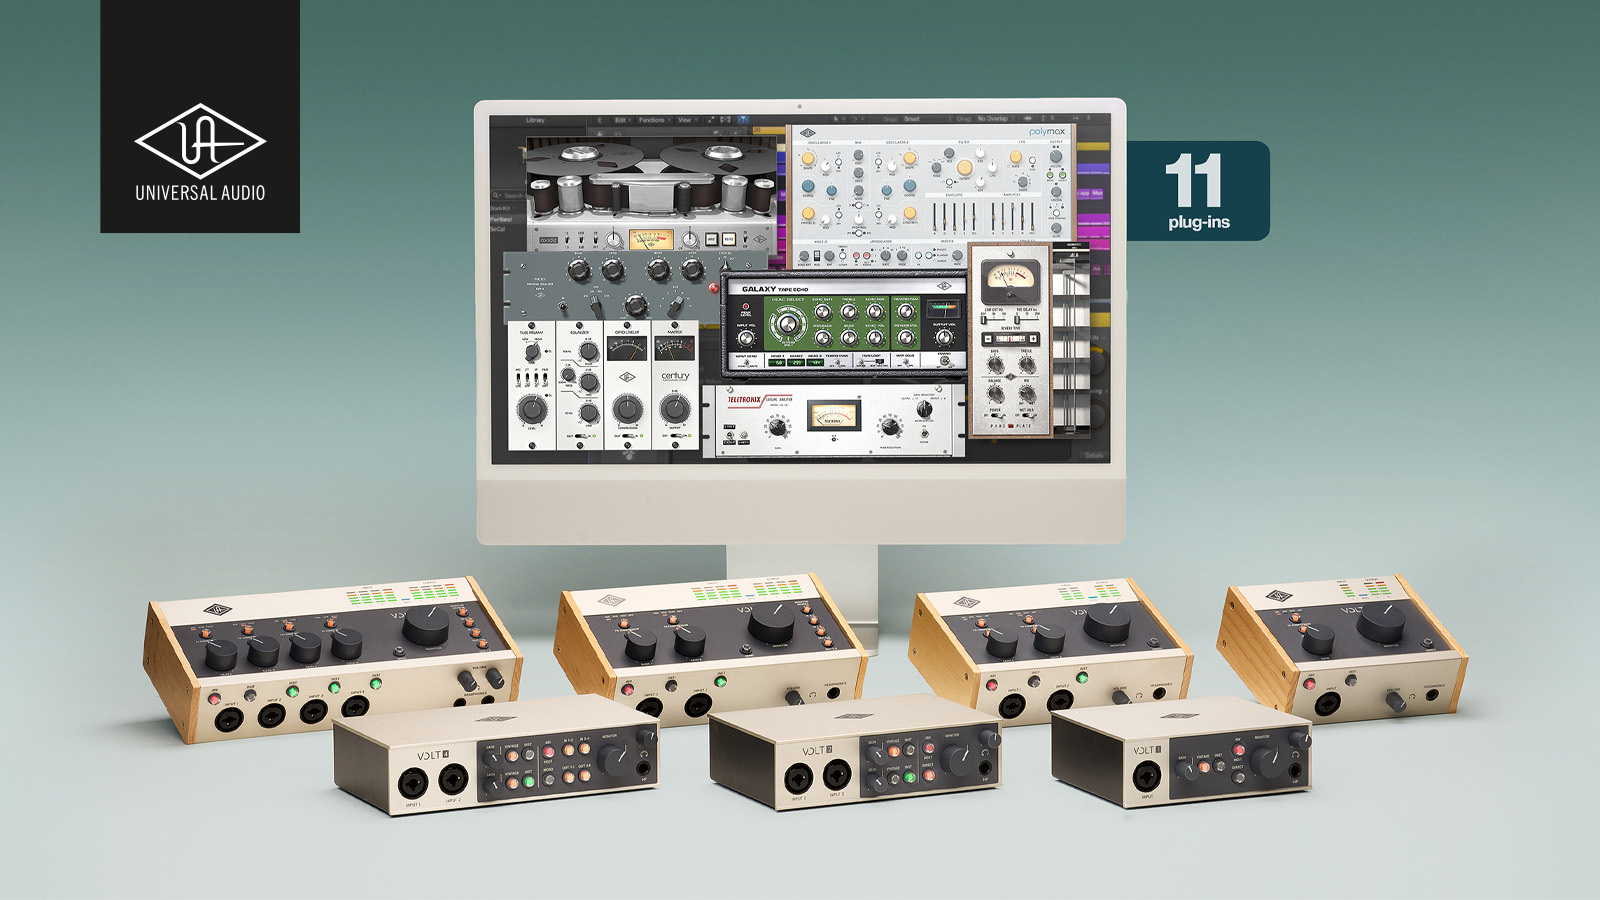 Universal Audio社のUSB接続オーディオインターフェイスVoltシリーズが特価になるとともに（Studio Packを除く）、購入の方に選りすぐりのUADプラグイン（$299相当）を無償で提供する「Volt + UAD Essentials バンドル」プロモーションを実施します。 世界 […]